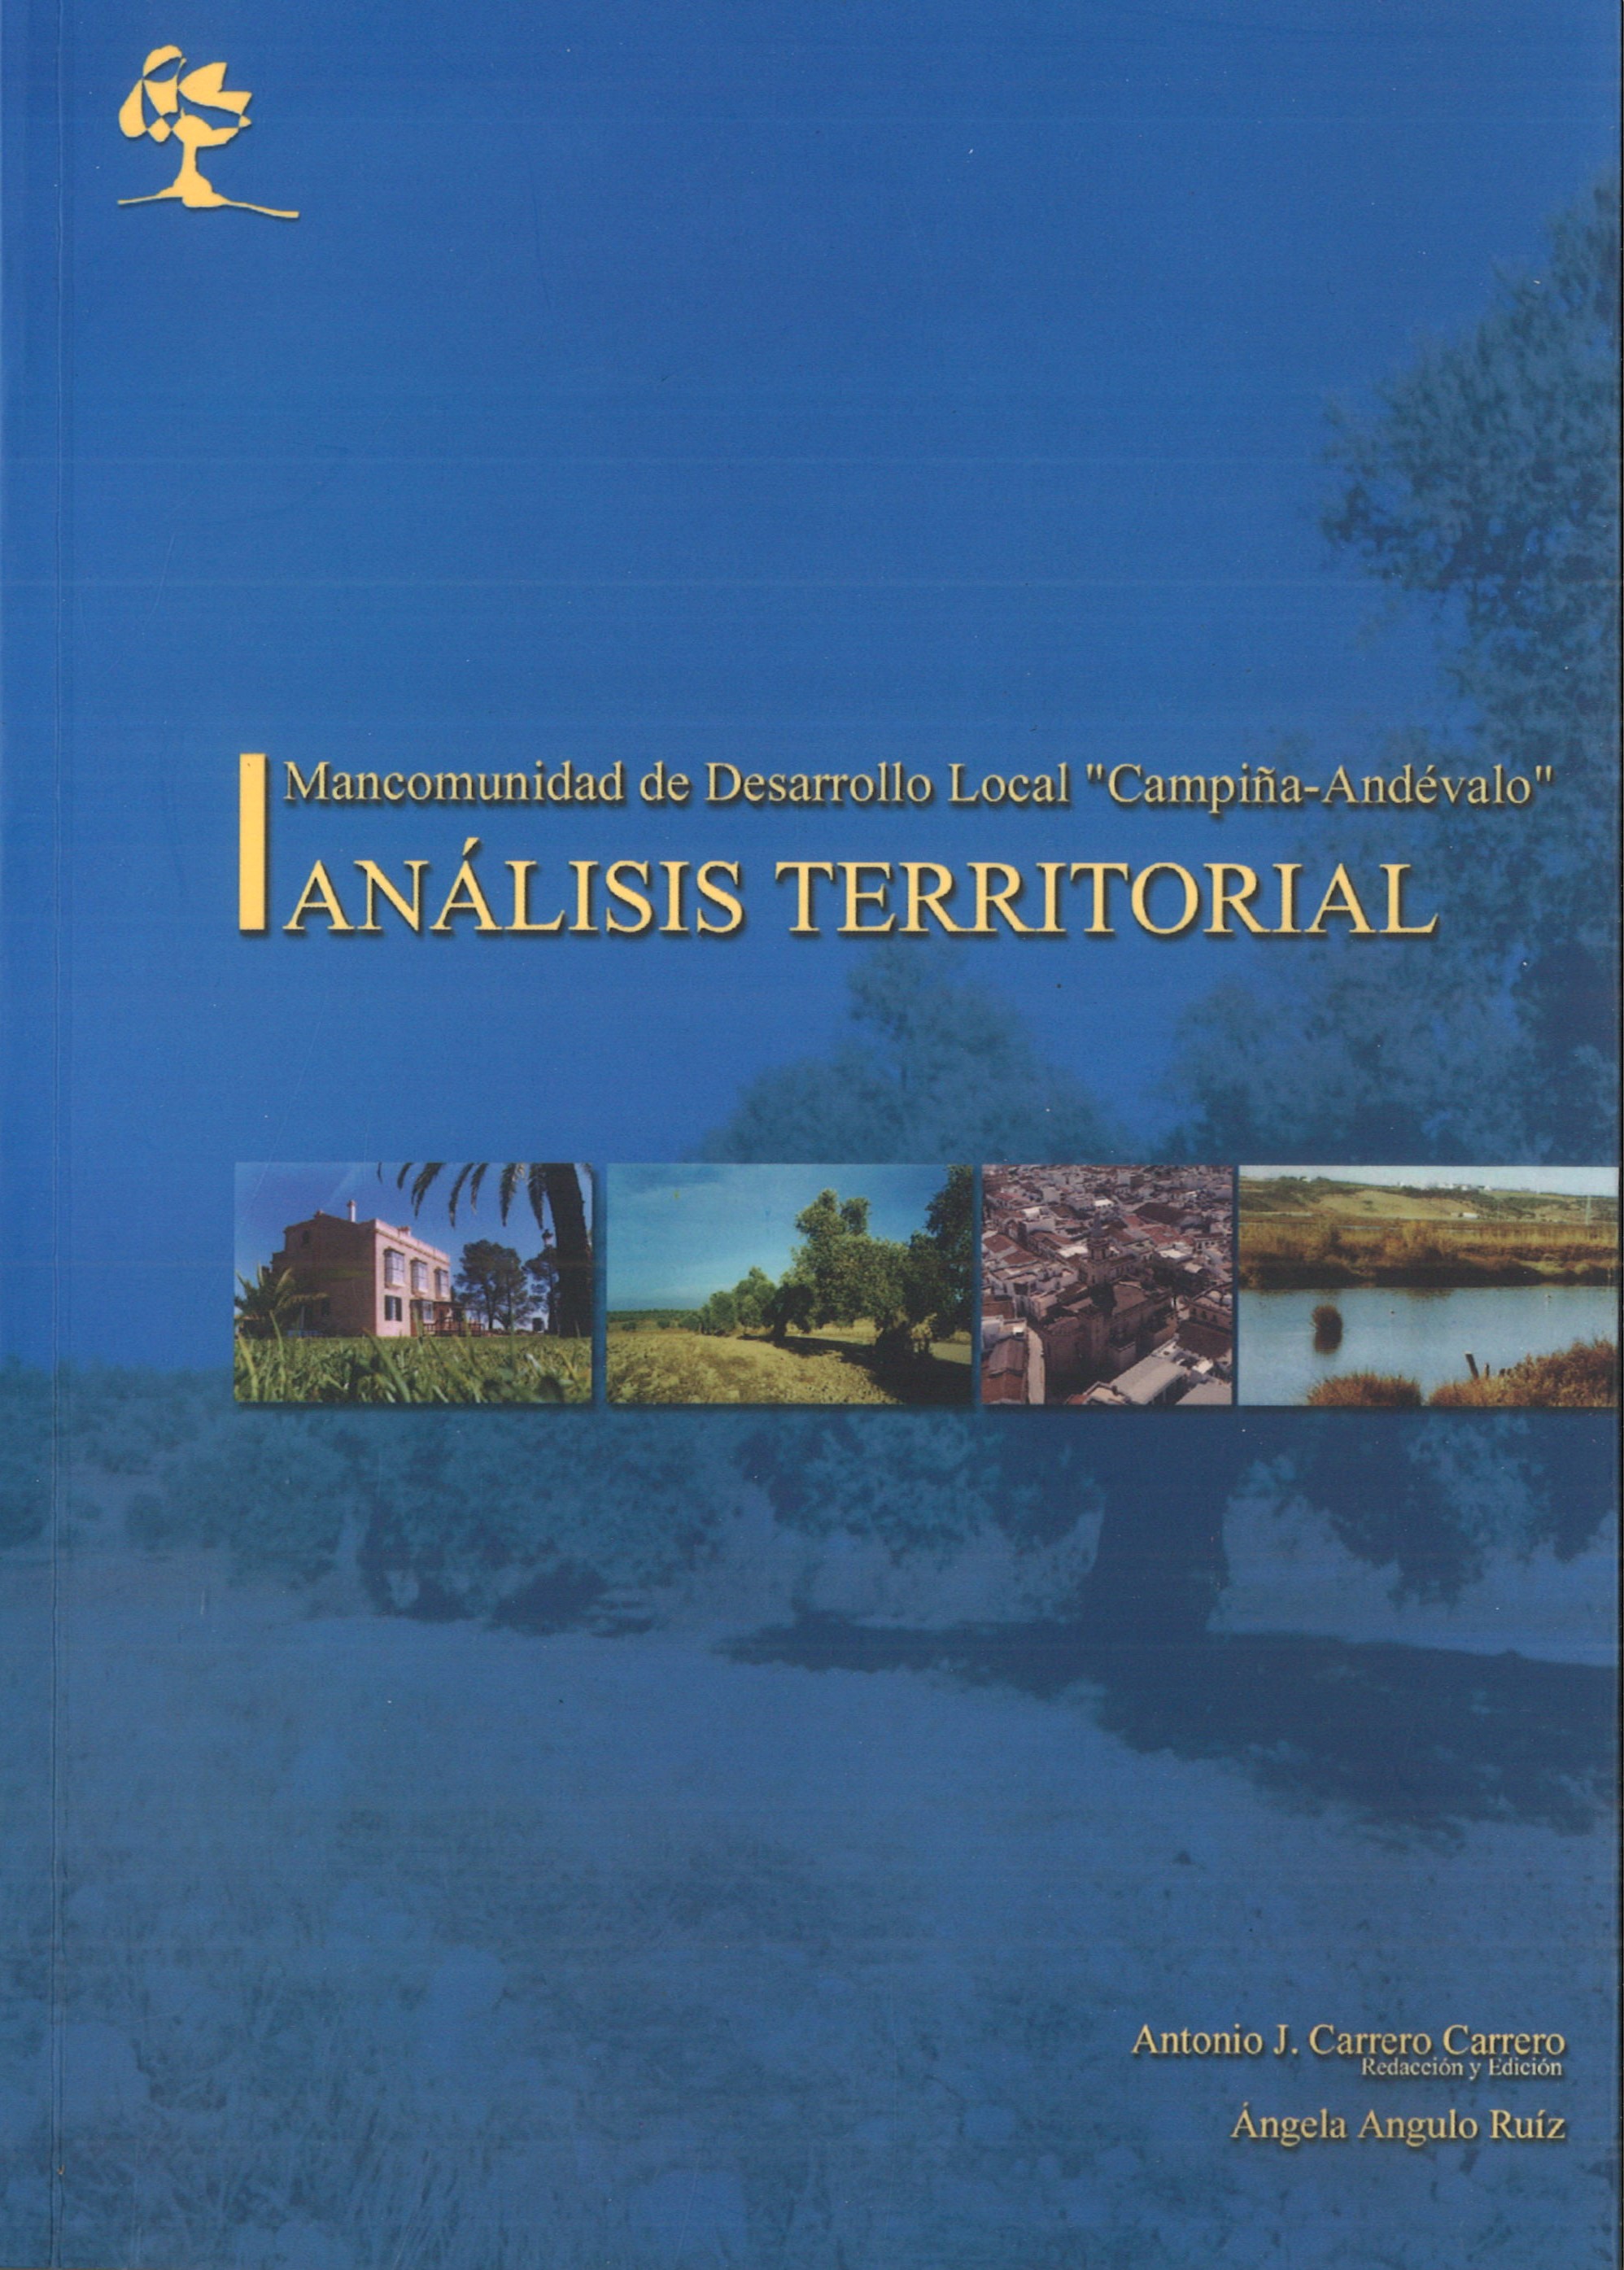 Imagen de portada del libro Mancomunidad Campiña-Andévalo: análisis territorial